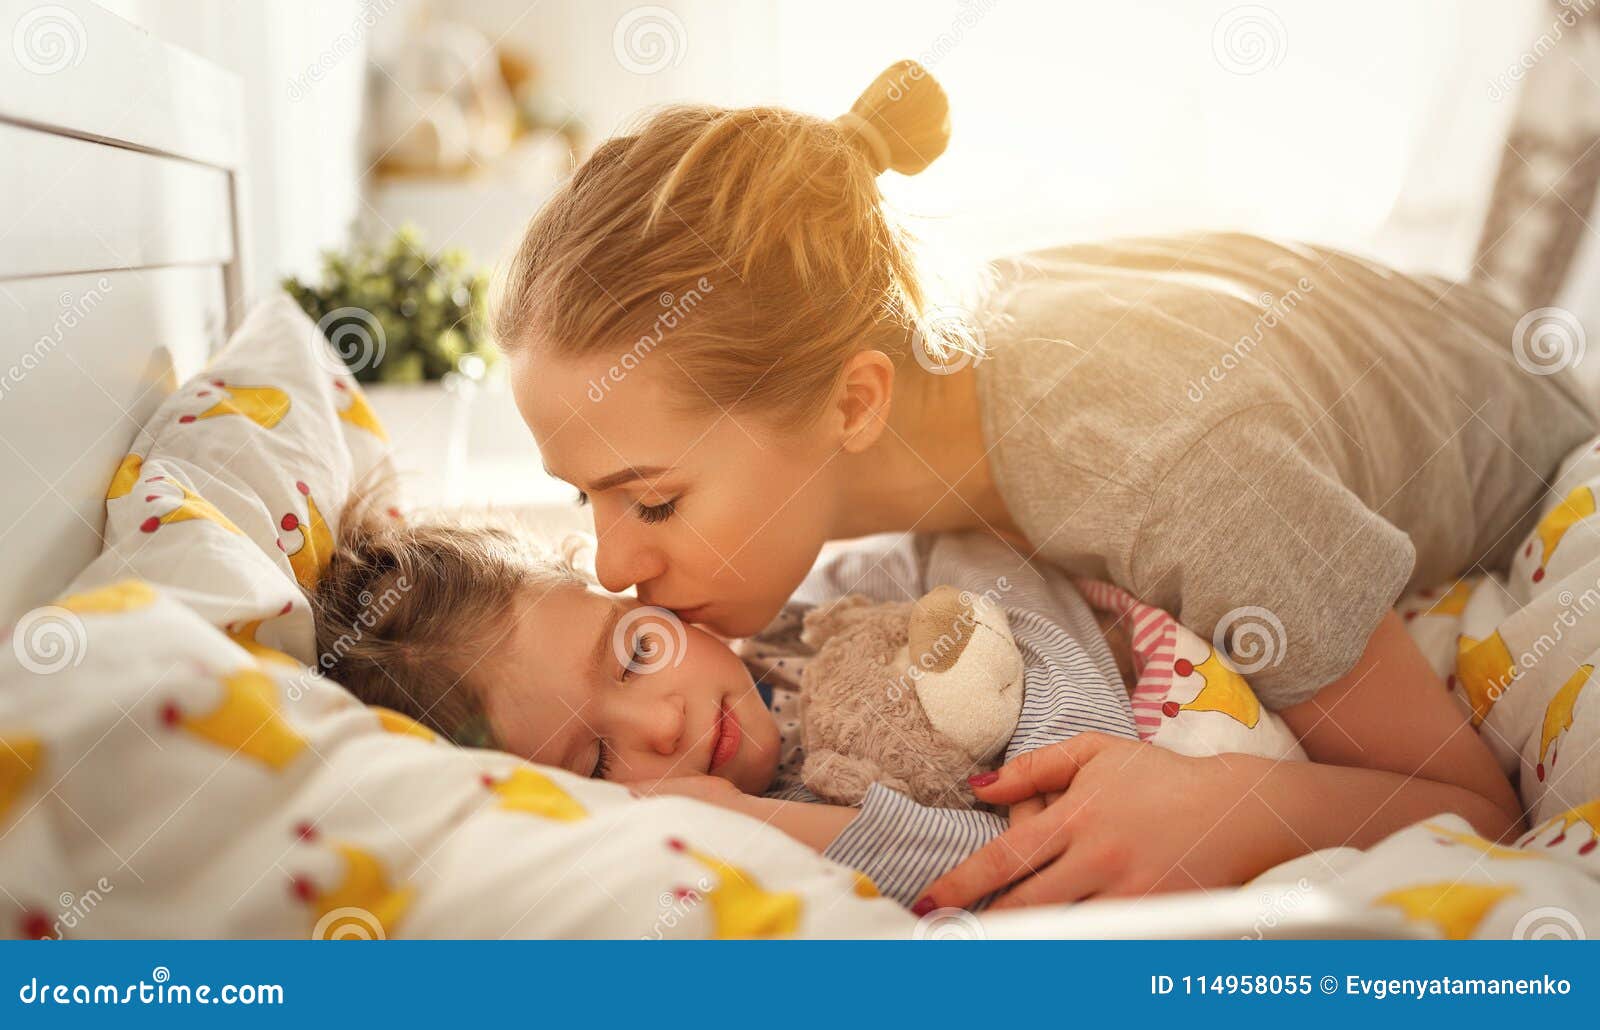 Целую маму спящую. Разбудить ребенка утром. Пробуждение младенца. Мама с ребенком перед сном. Мама будит утром ребенка.